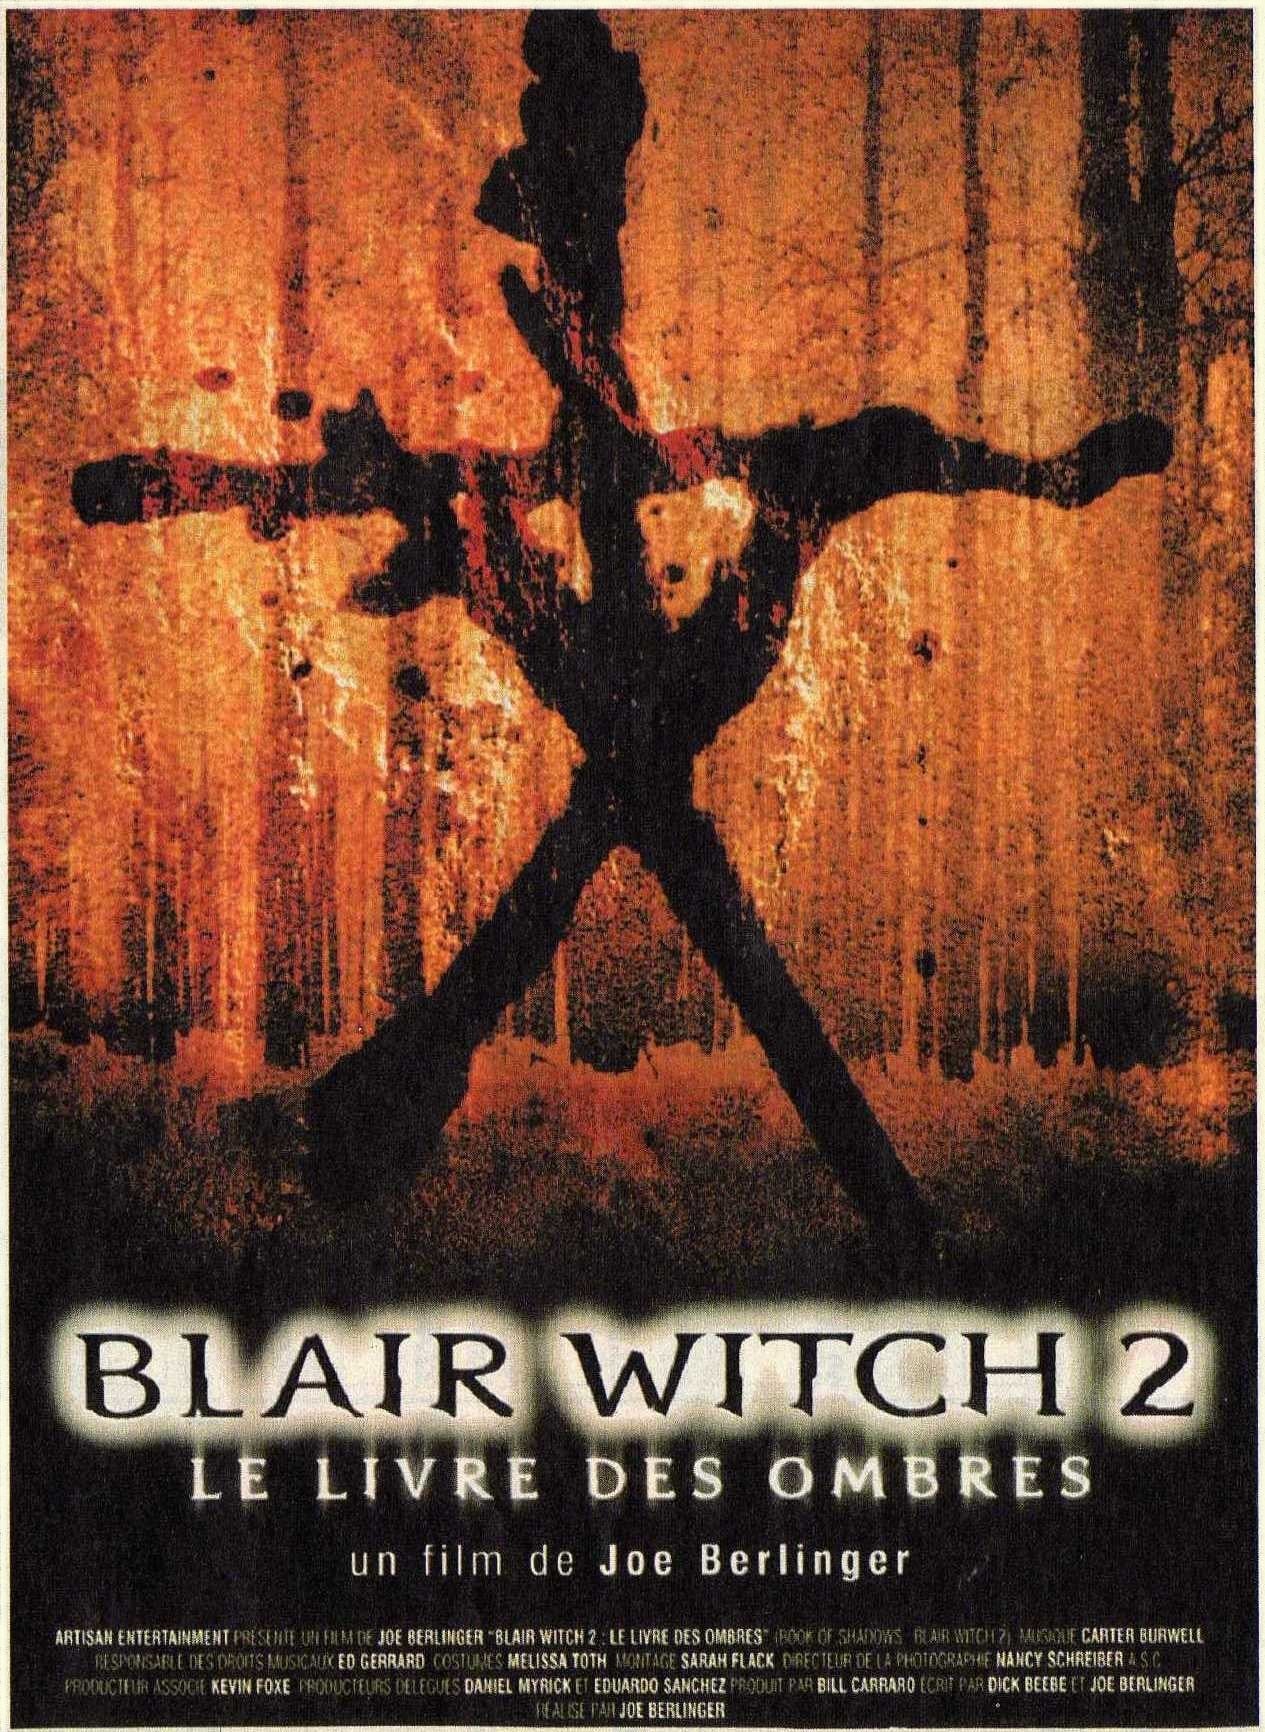 Blair witch 2 le livre des ombres